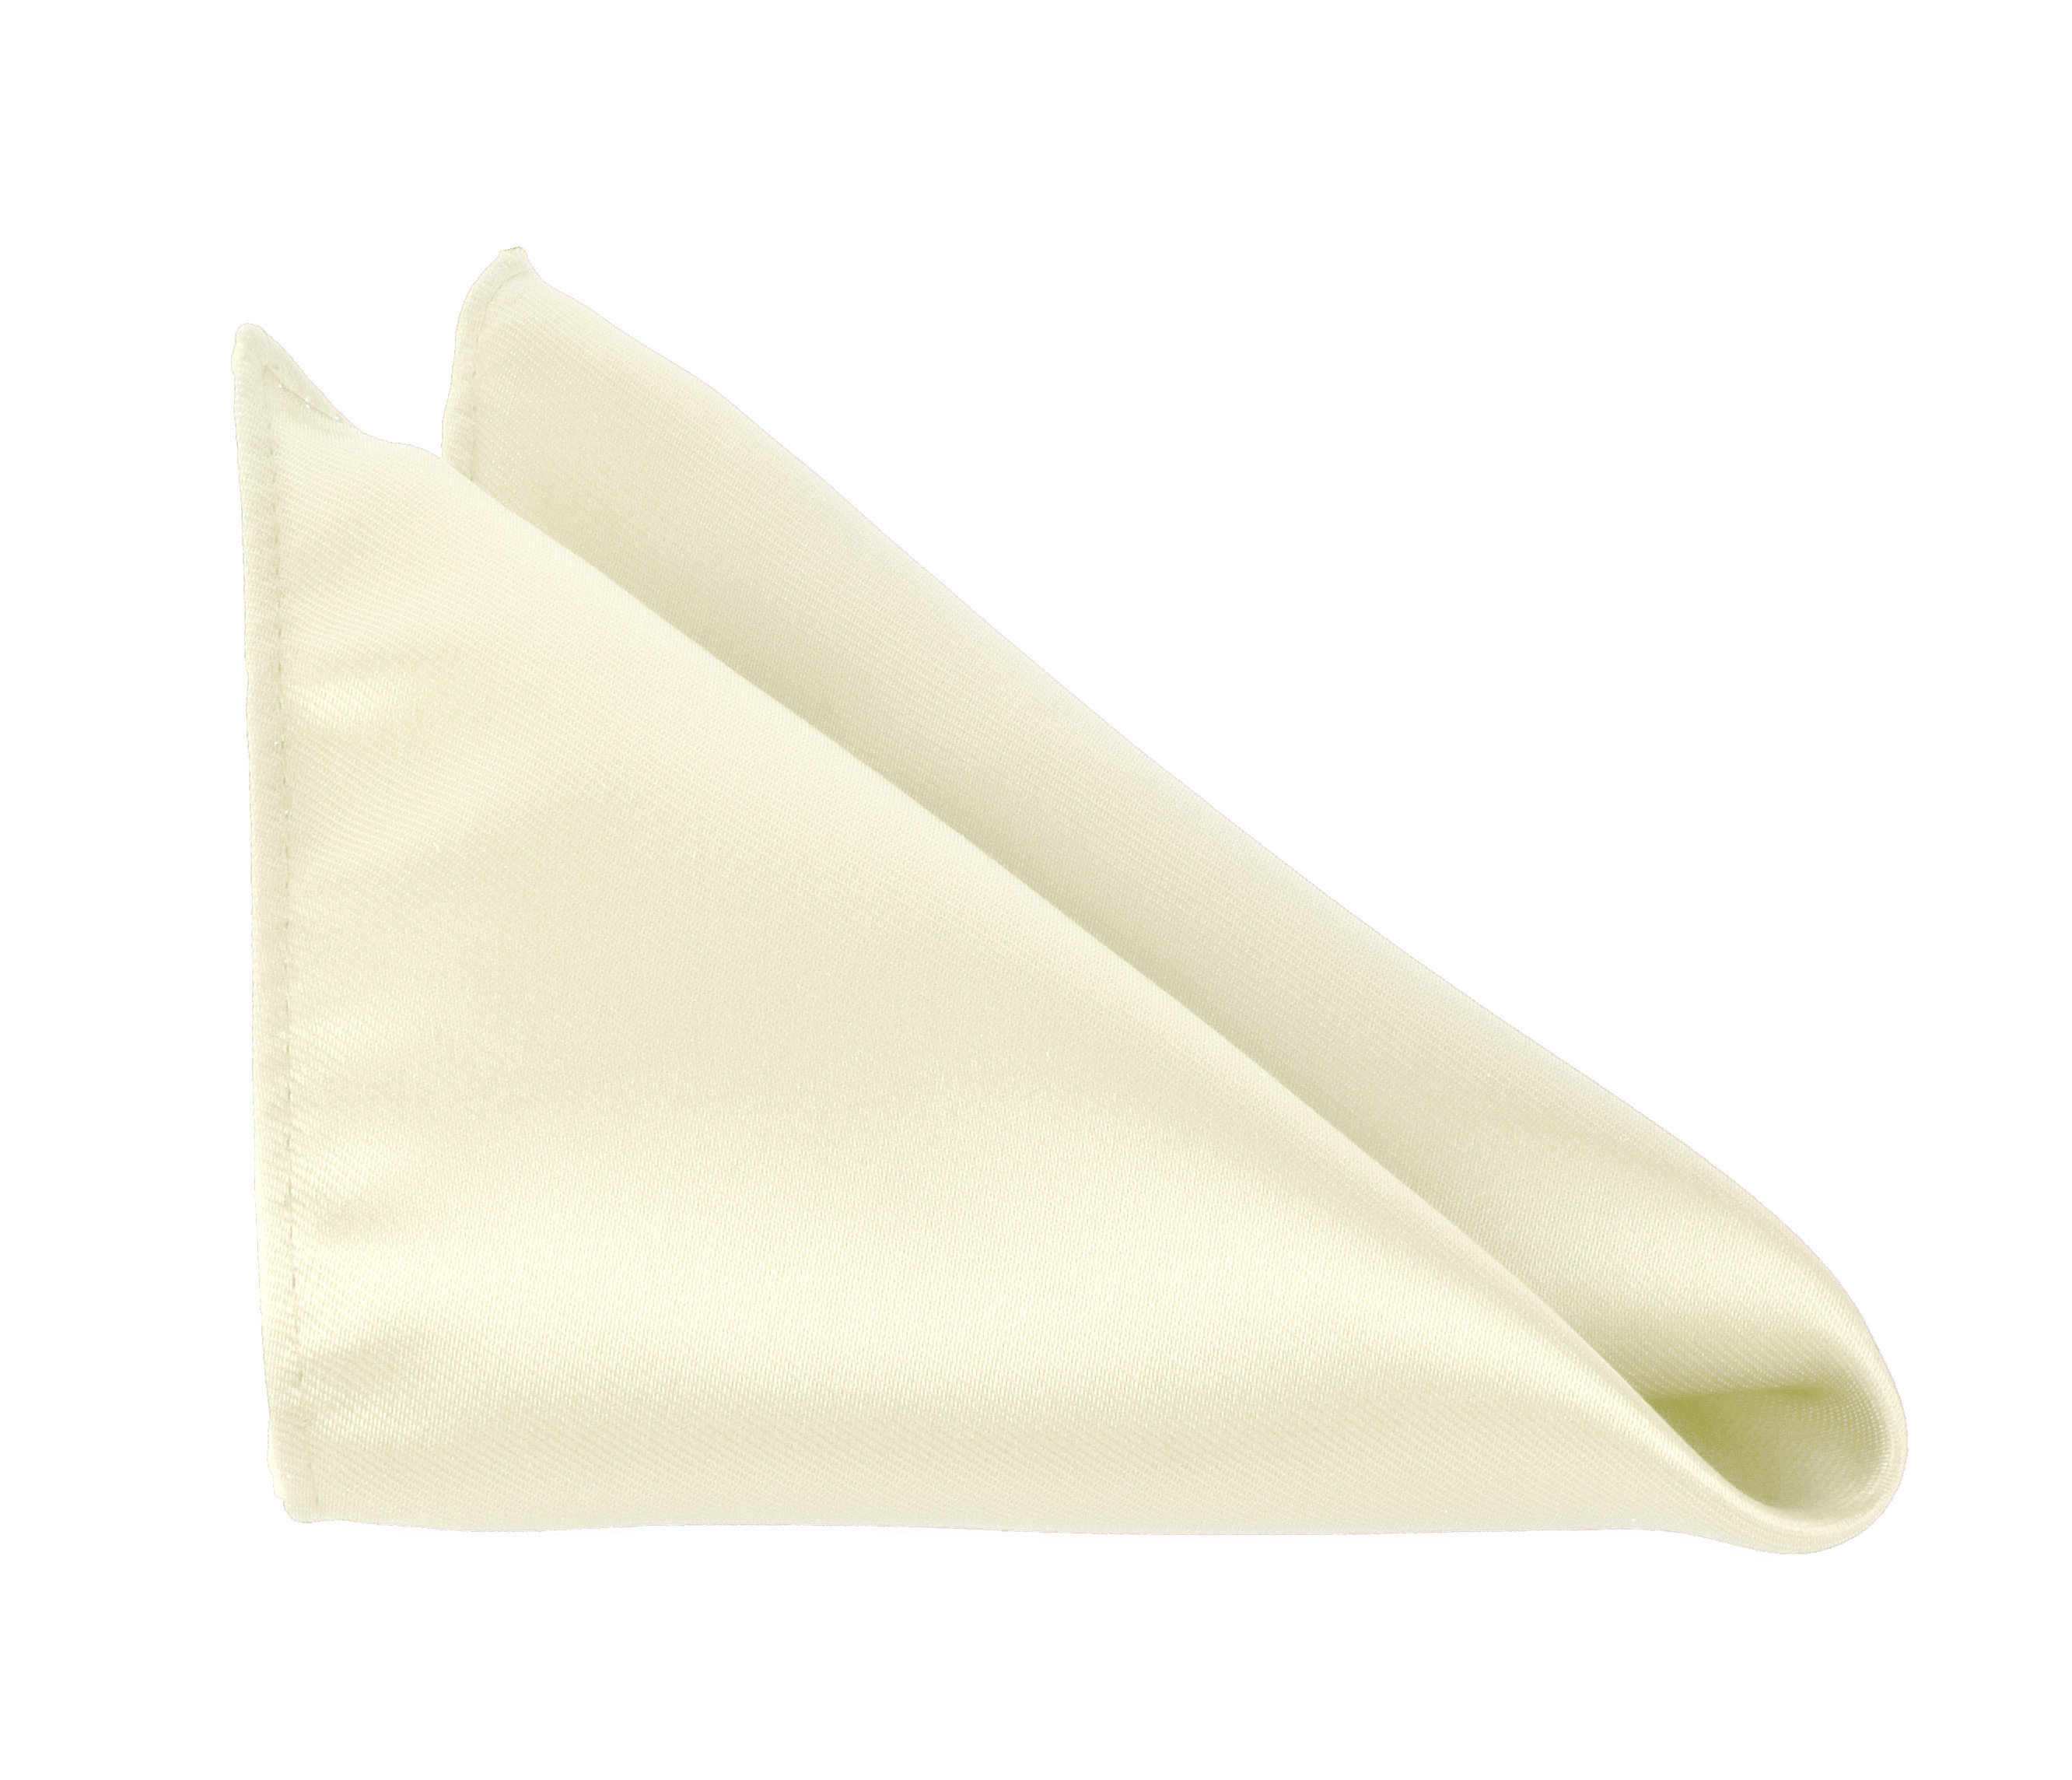 Men Pocket Square 10 x 10 Handkerchiefs Solid Color by Moda Di Raza - Ivory Cream